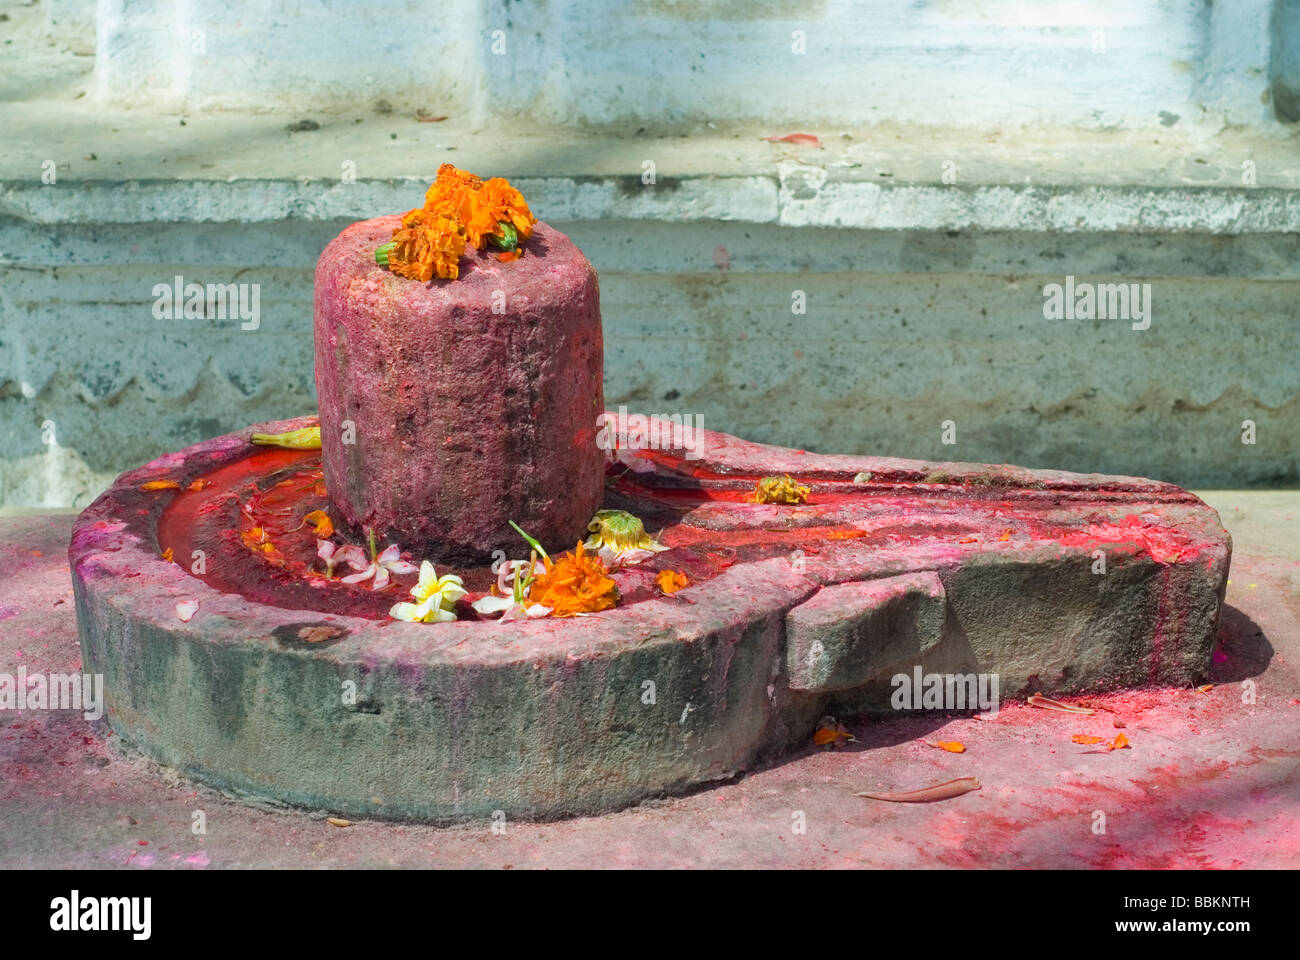 Shiva linga - oggetto di culto per gli indù. Holi festival, Varanasi (India). Foto Stock